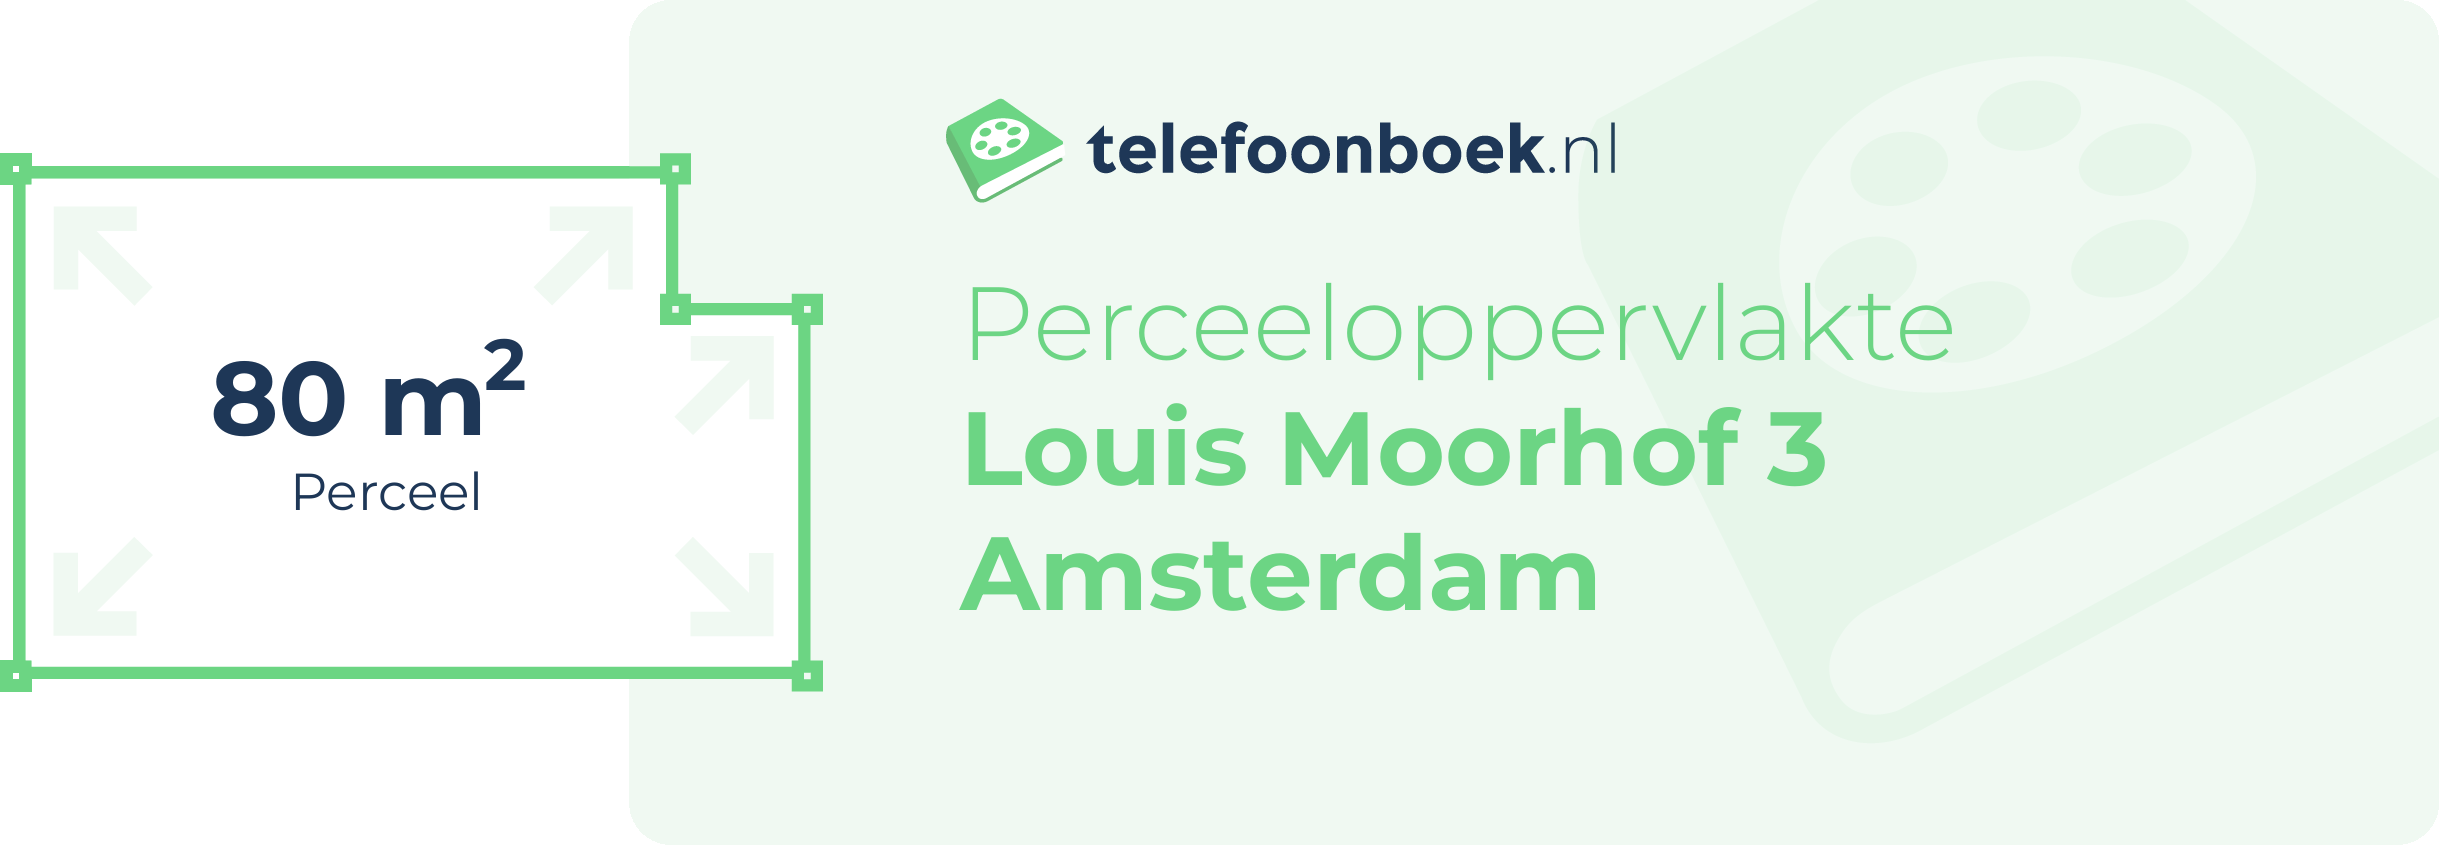 Perceeloppervlakte Louis Moorhof 3 Amsterdam